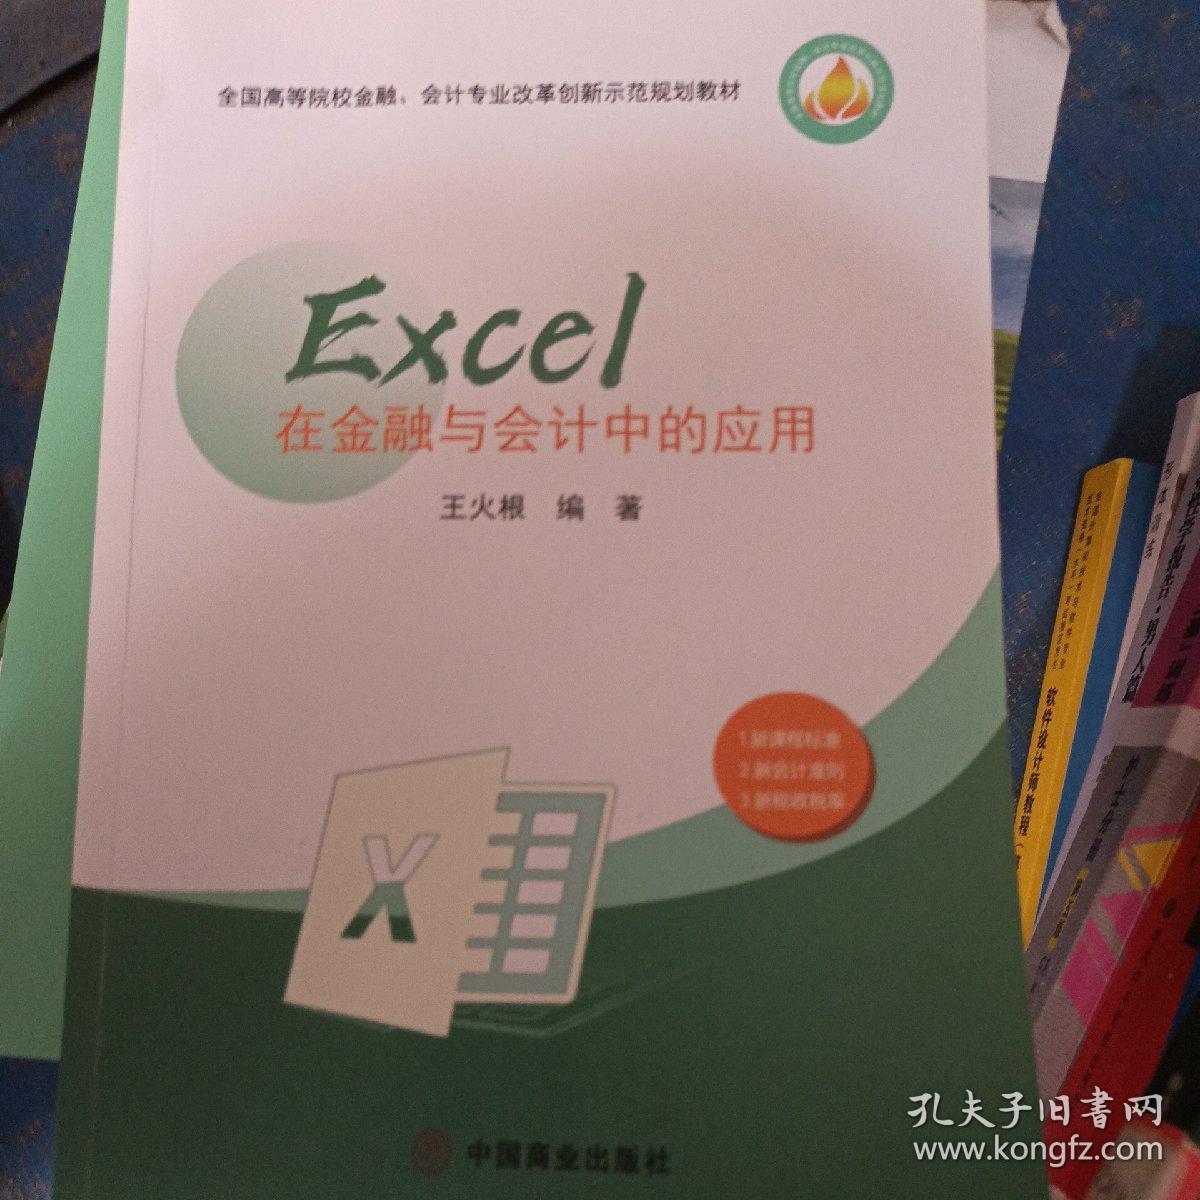 Excel在金融与会计中的应用